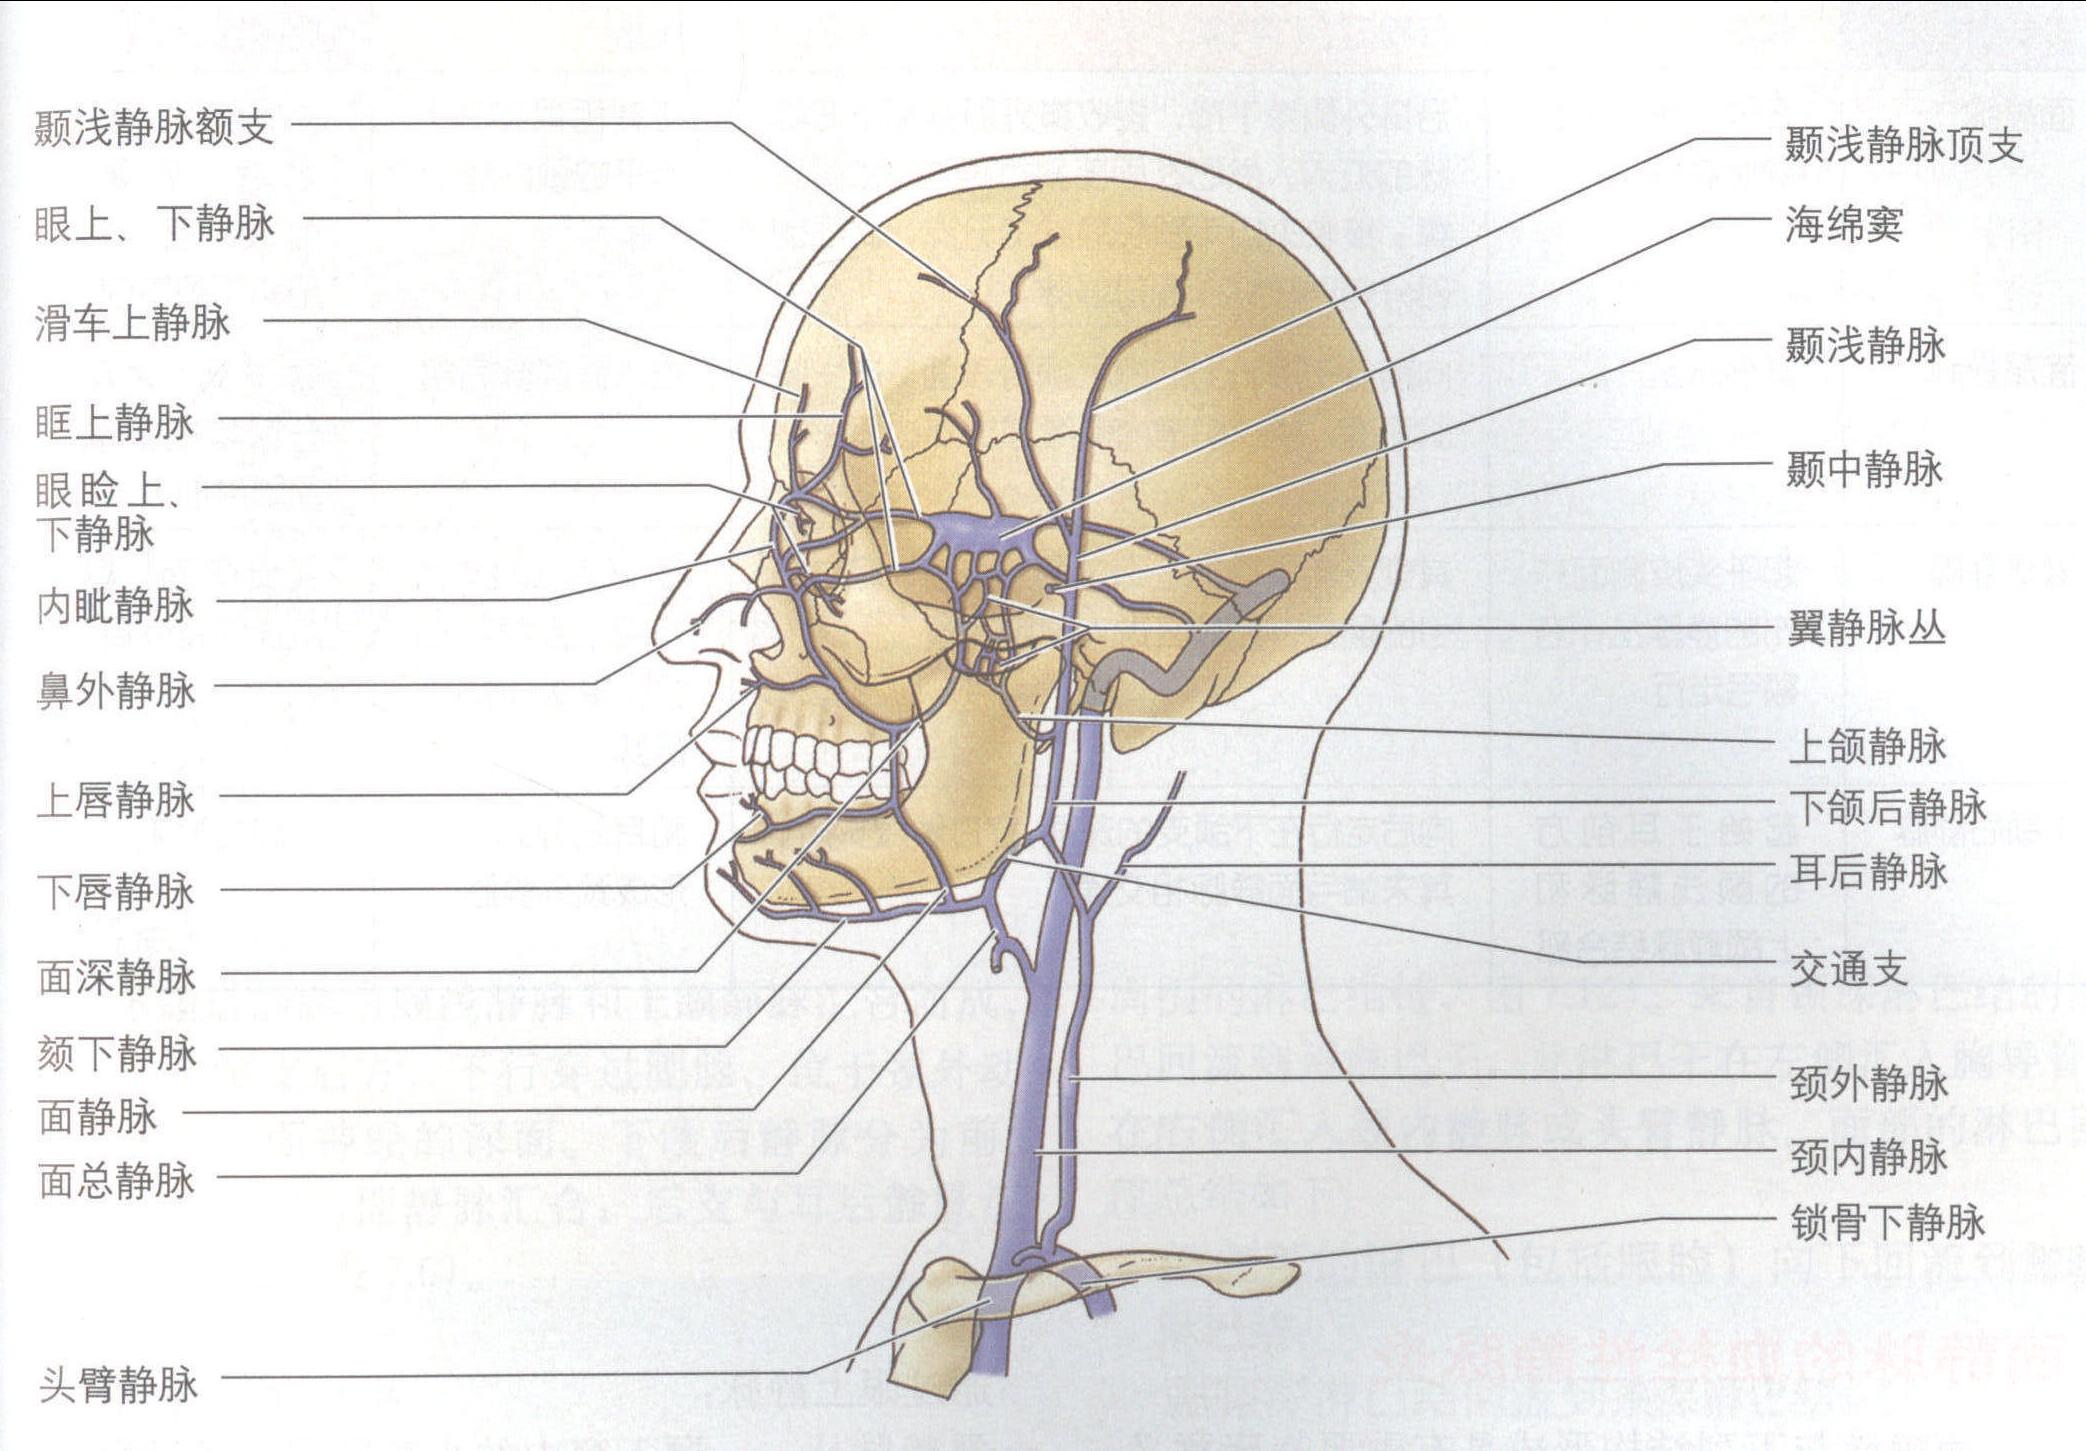 脑血管解剖学习笔记第26期：翼静脉丛大体解剖 - 脑医汇 - 神外资讯 - 神介资讯